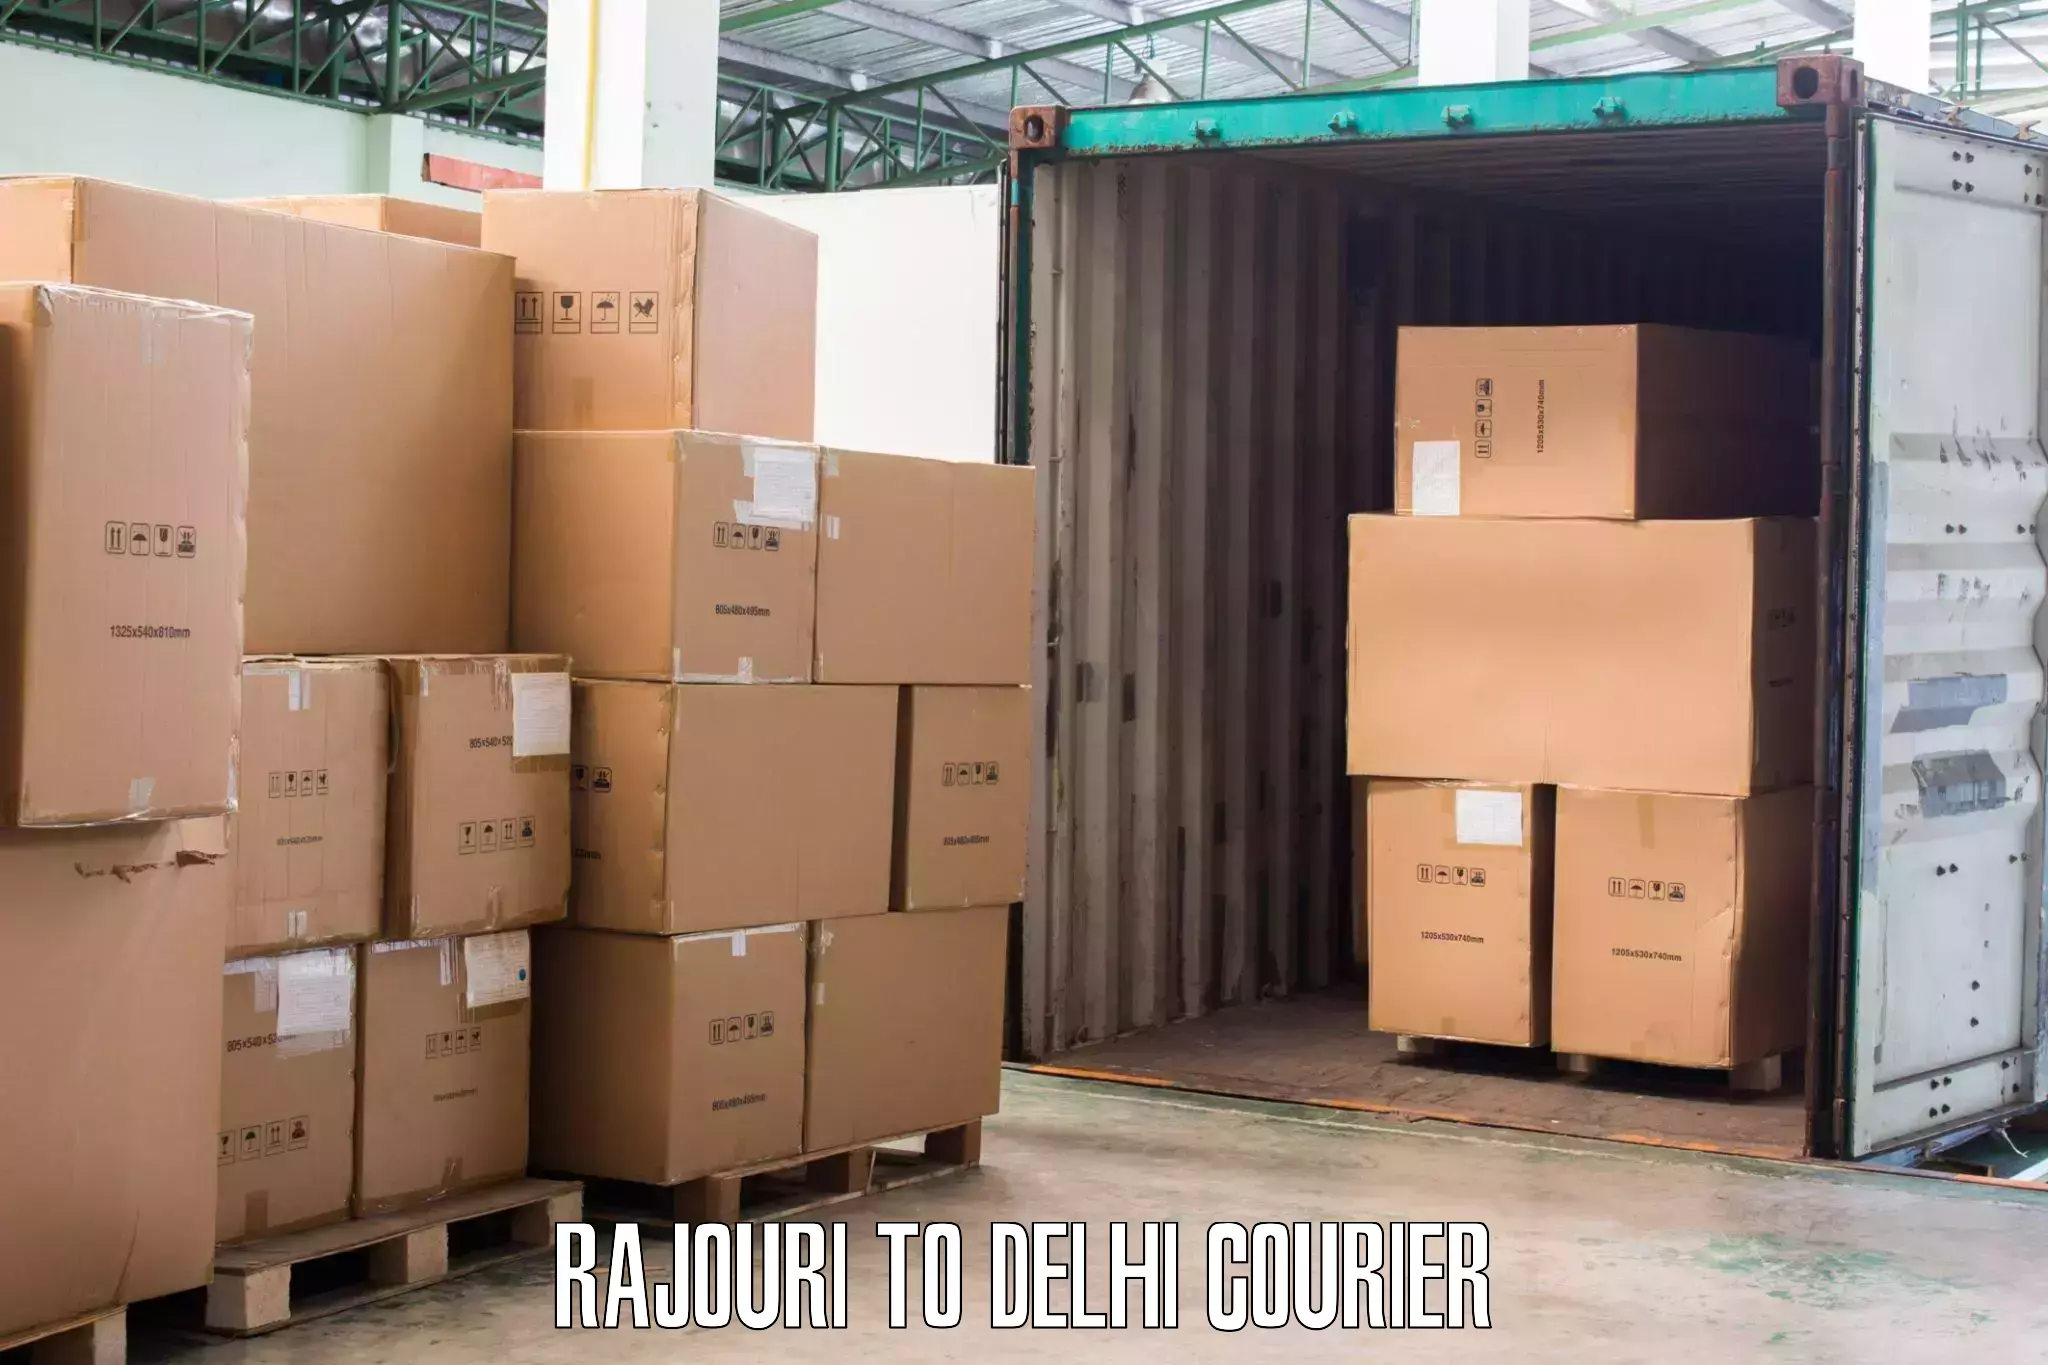 Local furniture movers Rajouri to Delhi